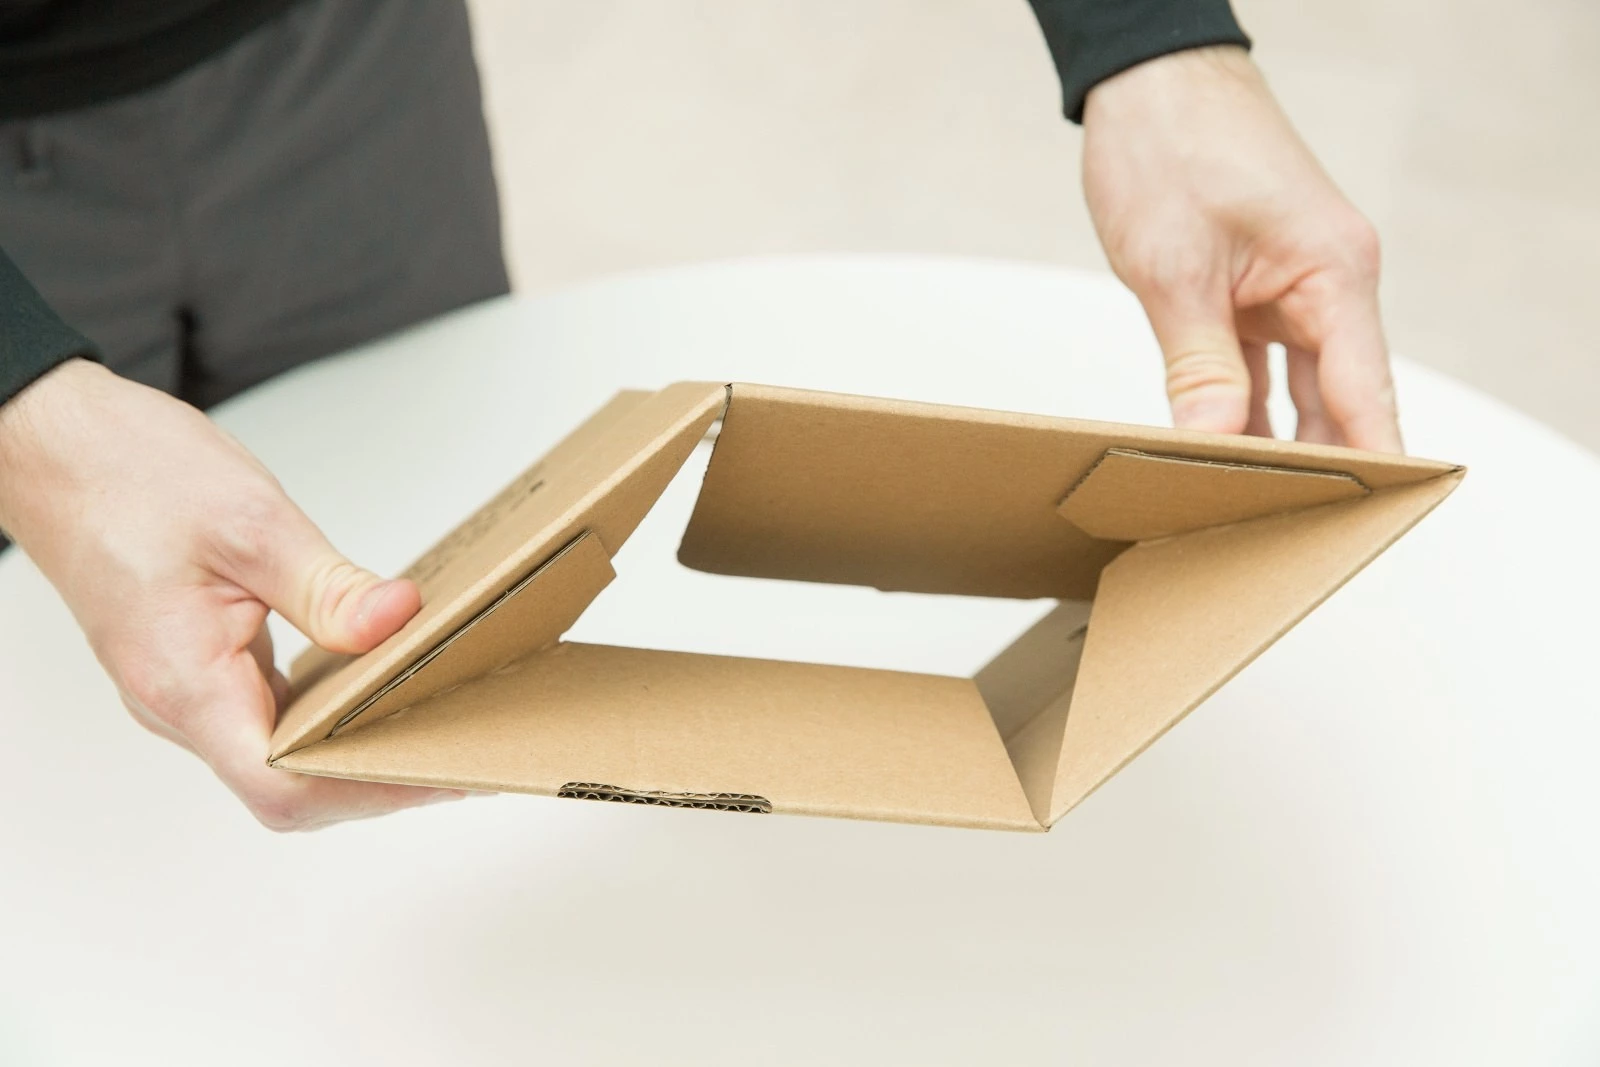 ukázka rychlého složení kartonové krabice speedbox